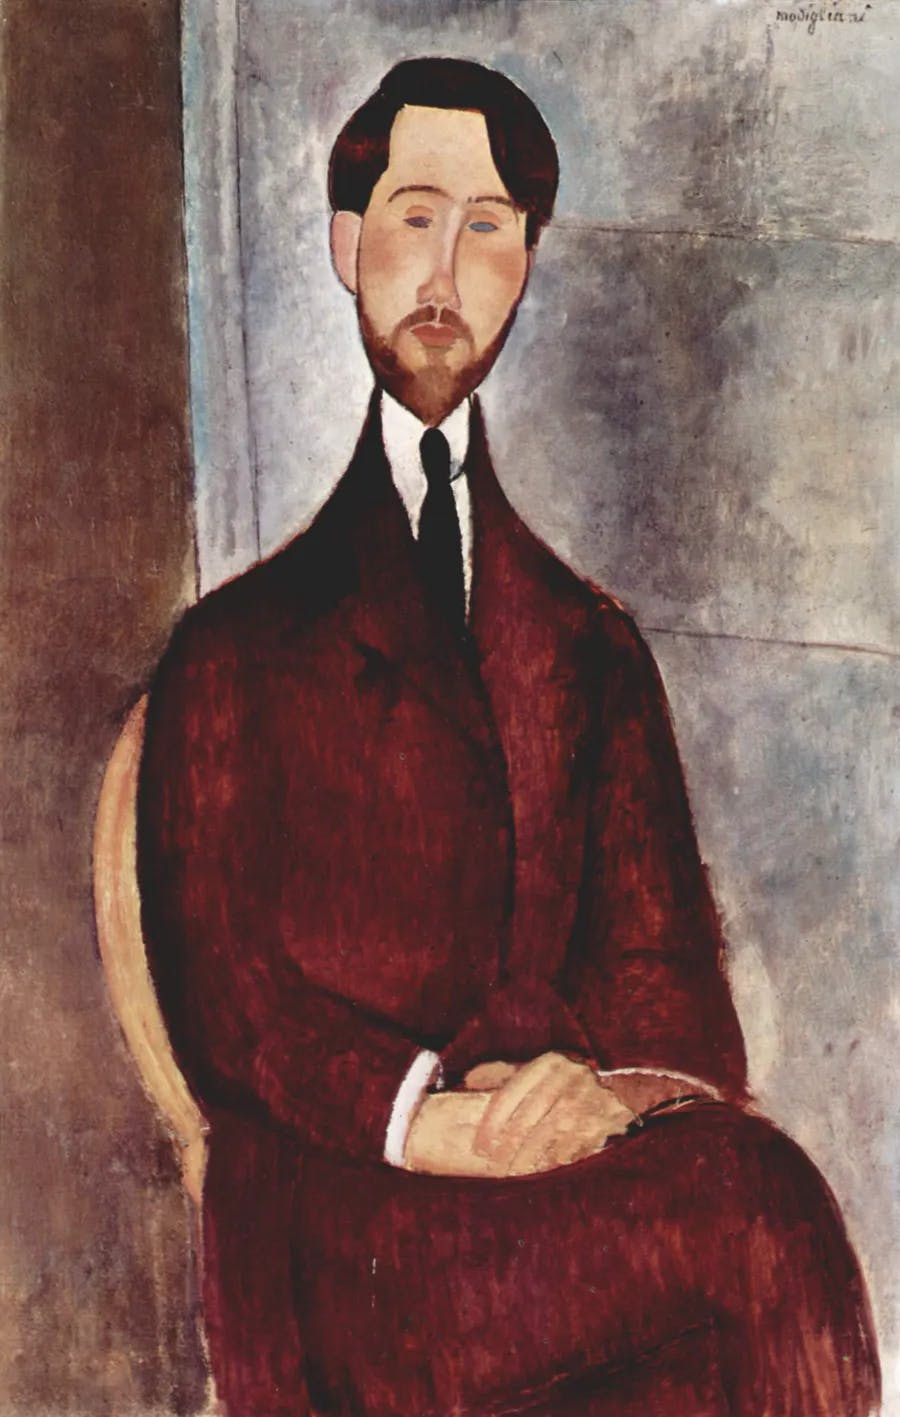 Amedeo Modigliani (1884-1920), ‘Portrait of Leopold Zborowski’, 1916, São Paulo Museum of Art, São Paulo. Photo public domain